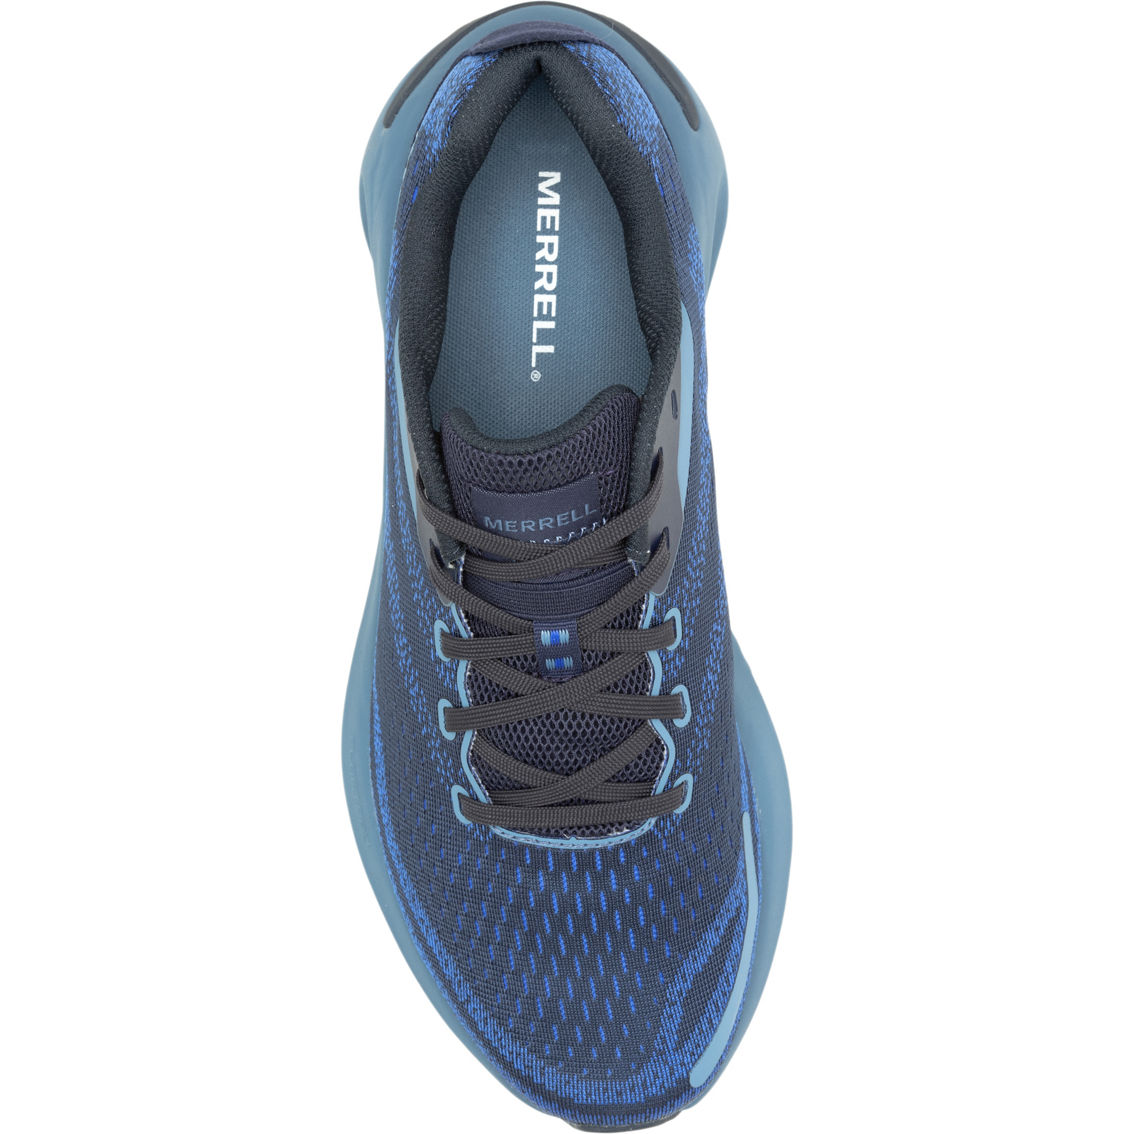 Merrell Men's Morphlite Sea Trail Running Shoes - Image 4 of 6